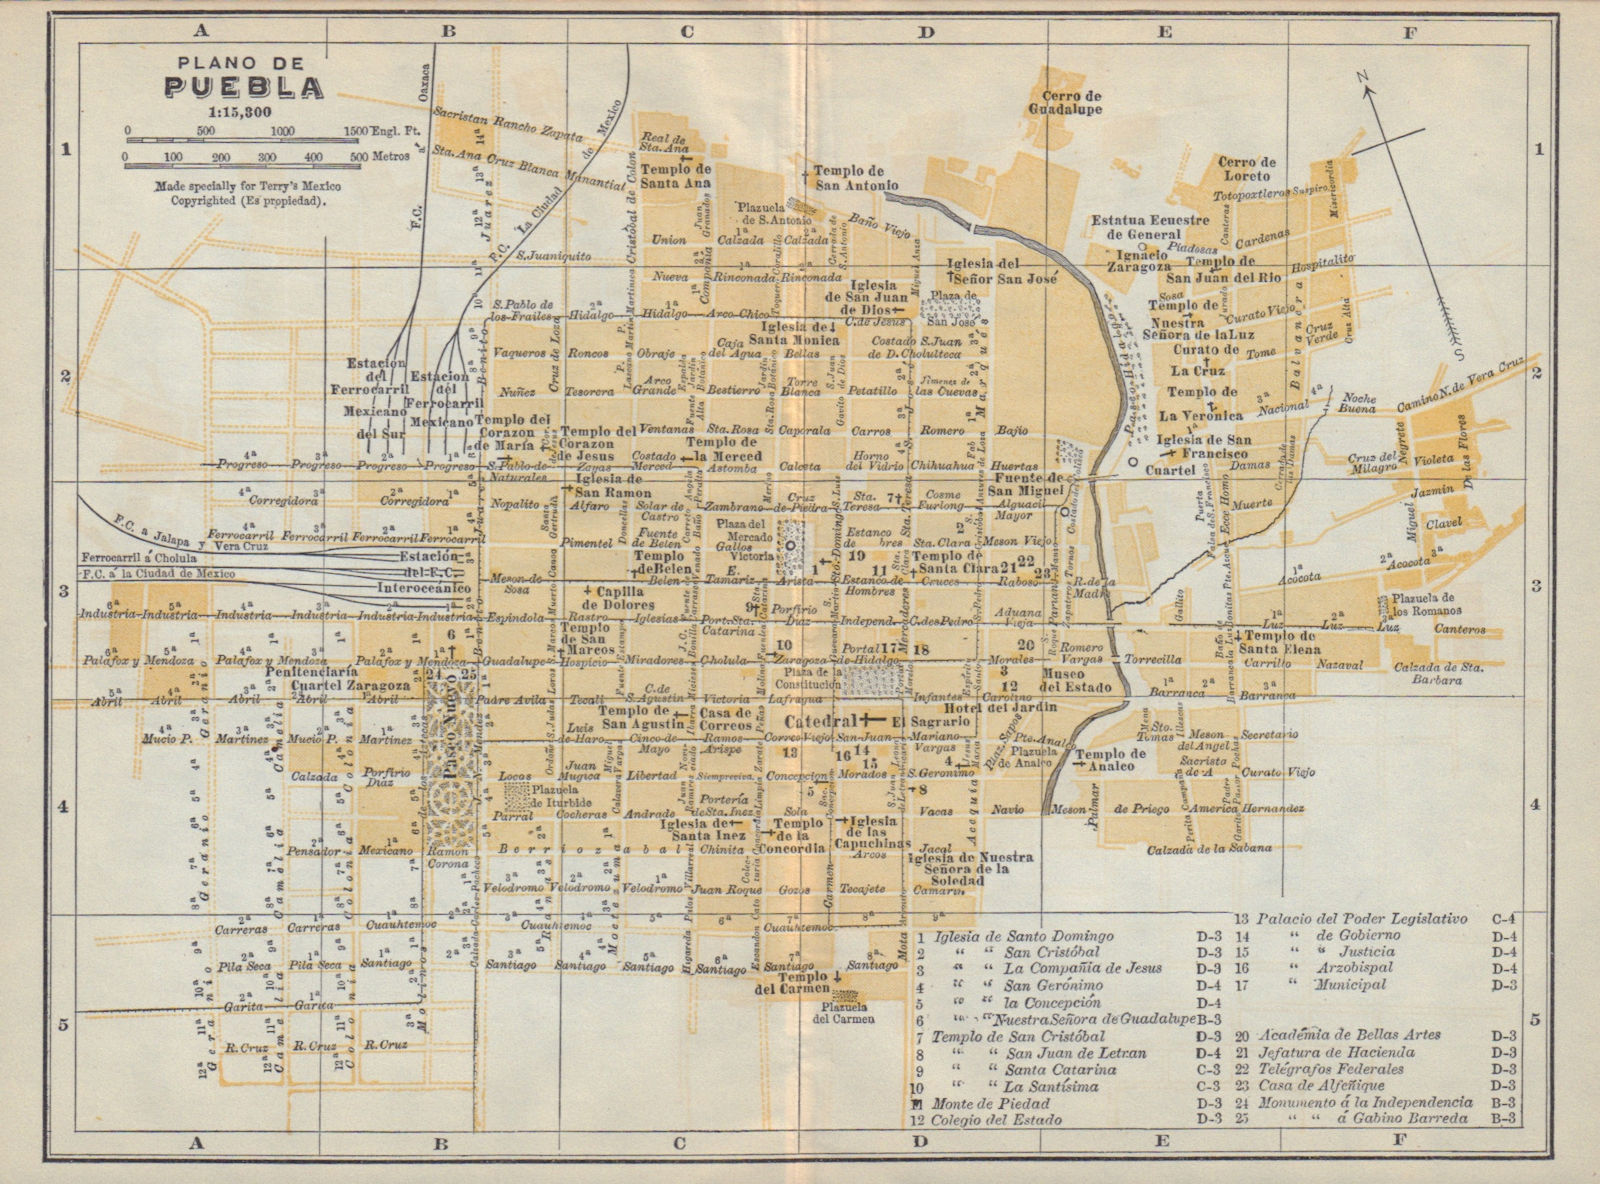 Plano de PUEBLA, Mexico. Mapa de la ciudad. City/town plan 1938 old